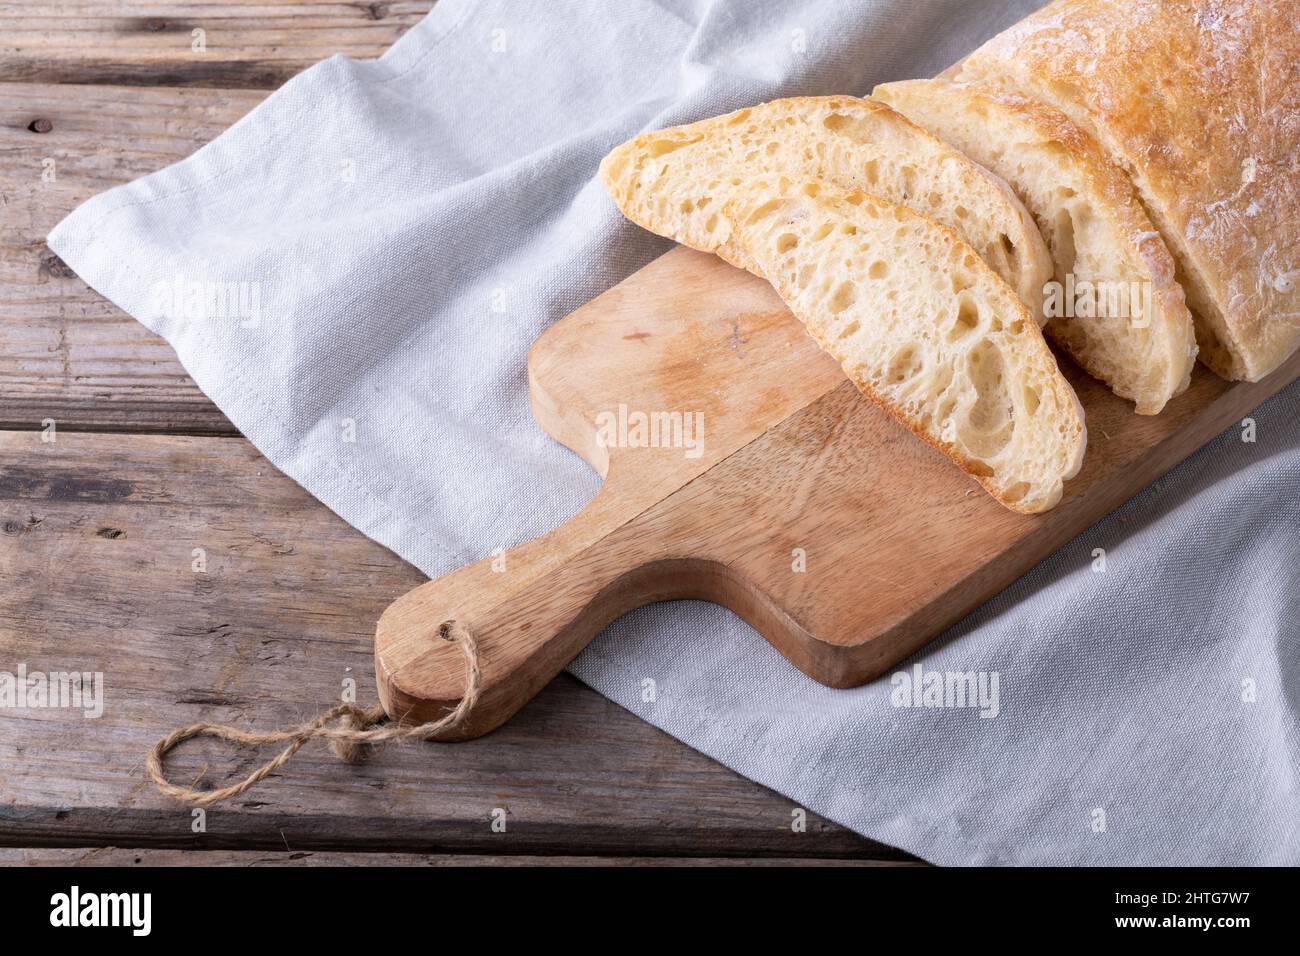 Vue en grand angle des tranches de pain sur une table de service en bois au-dessus de la serviette de table Banque D'Images